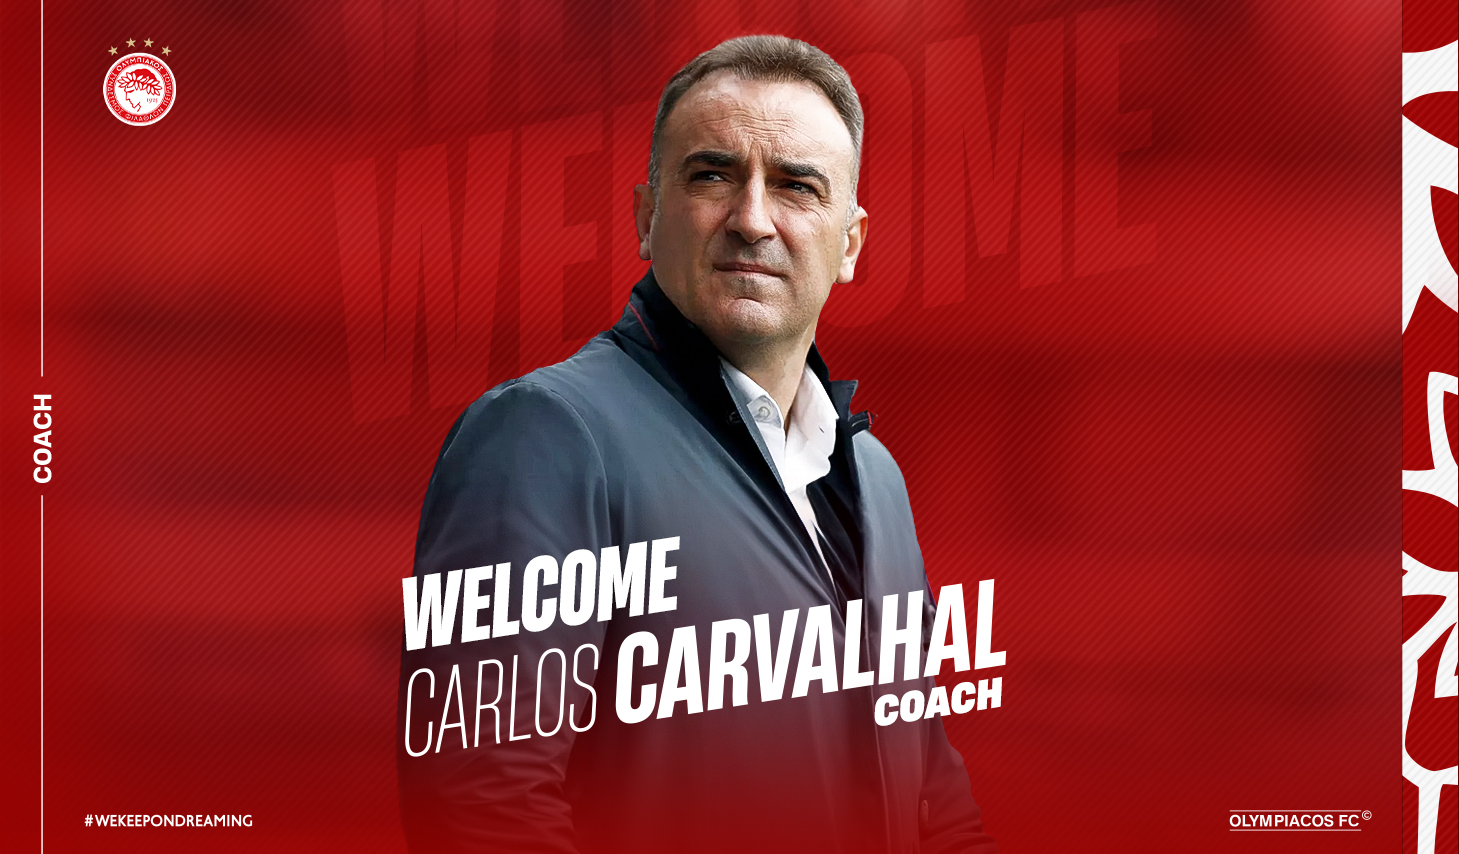 Communiqué de presse de l’Olympiacos FC sur la signature de Carlos Carvalhal